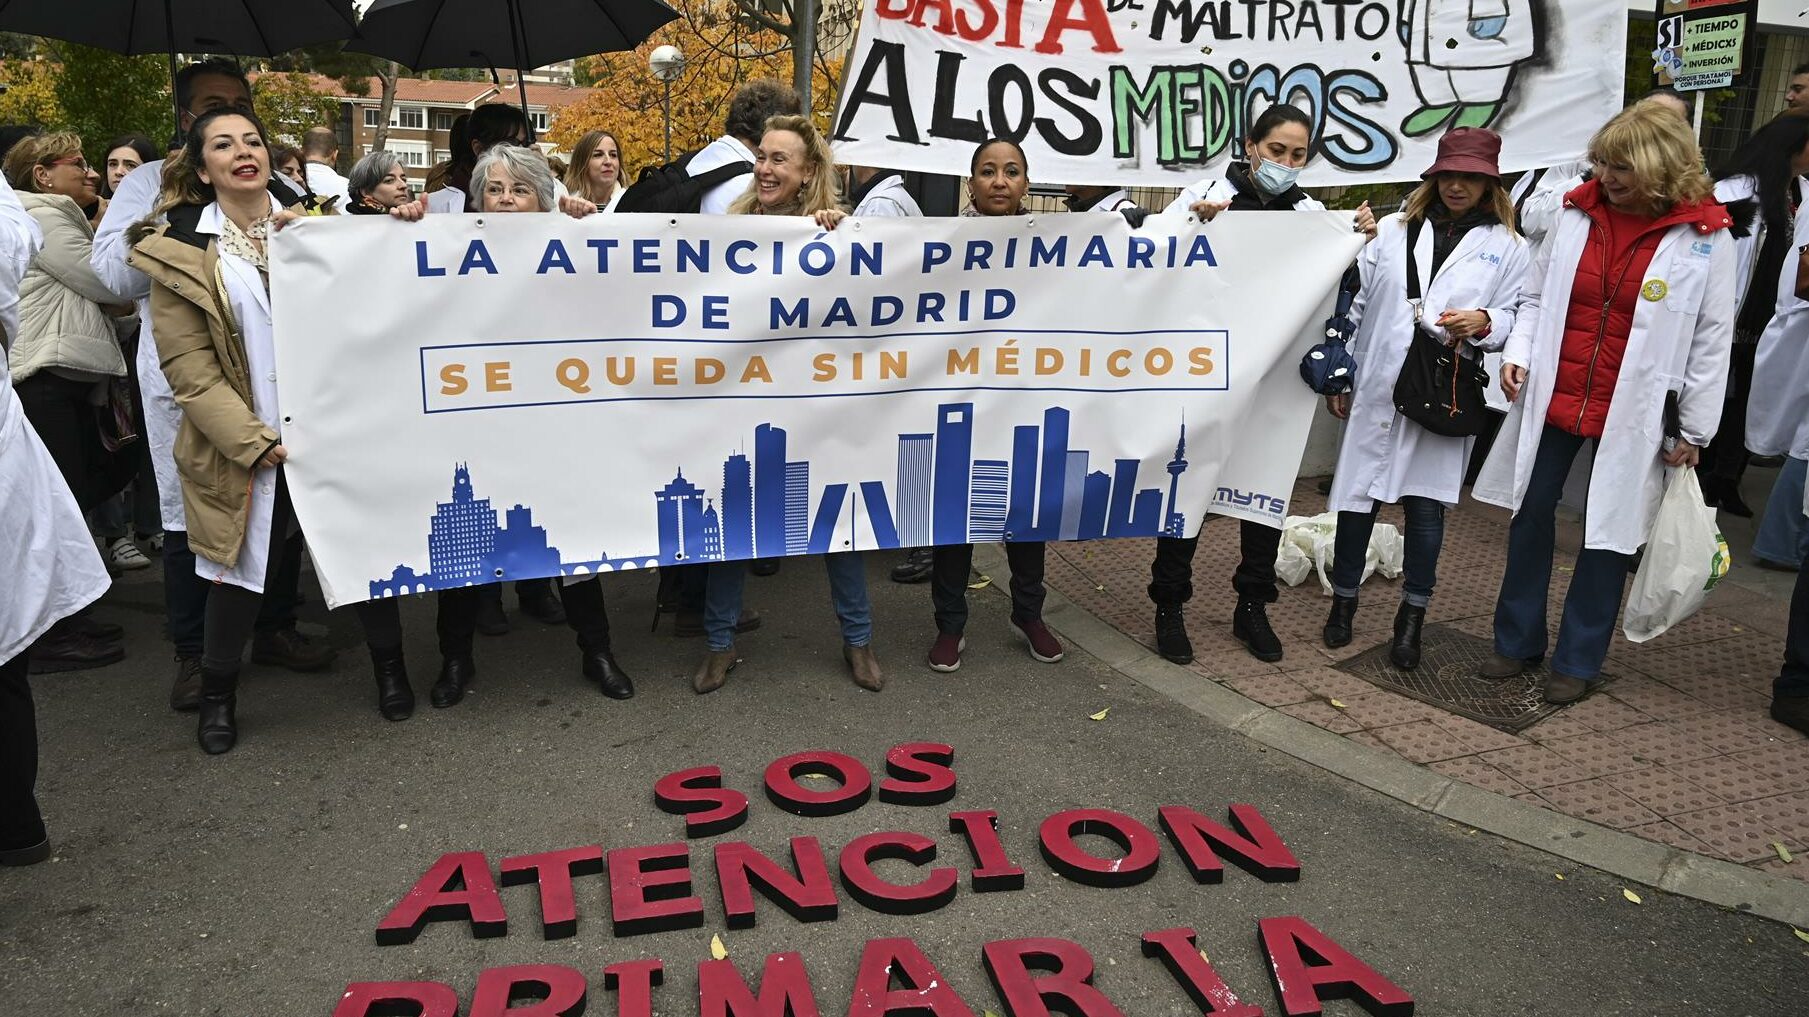 Participantes en la concentración convocada por el sindicato AMYTS, mayoritario entre los médicos madrileños, frente a la Gerencia de Atención Primaria